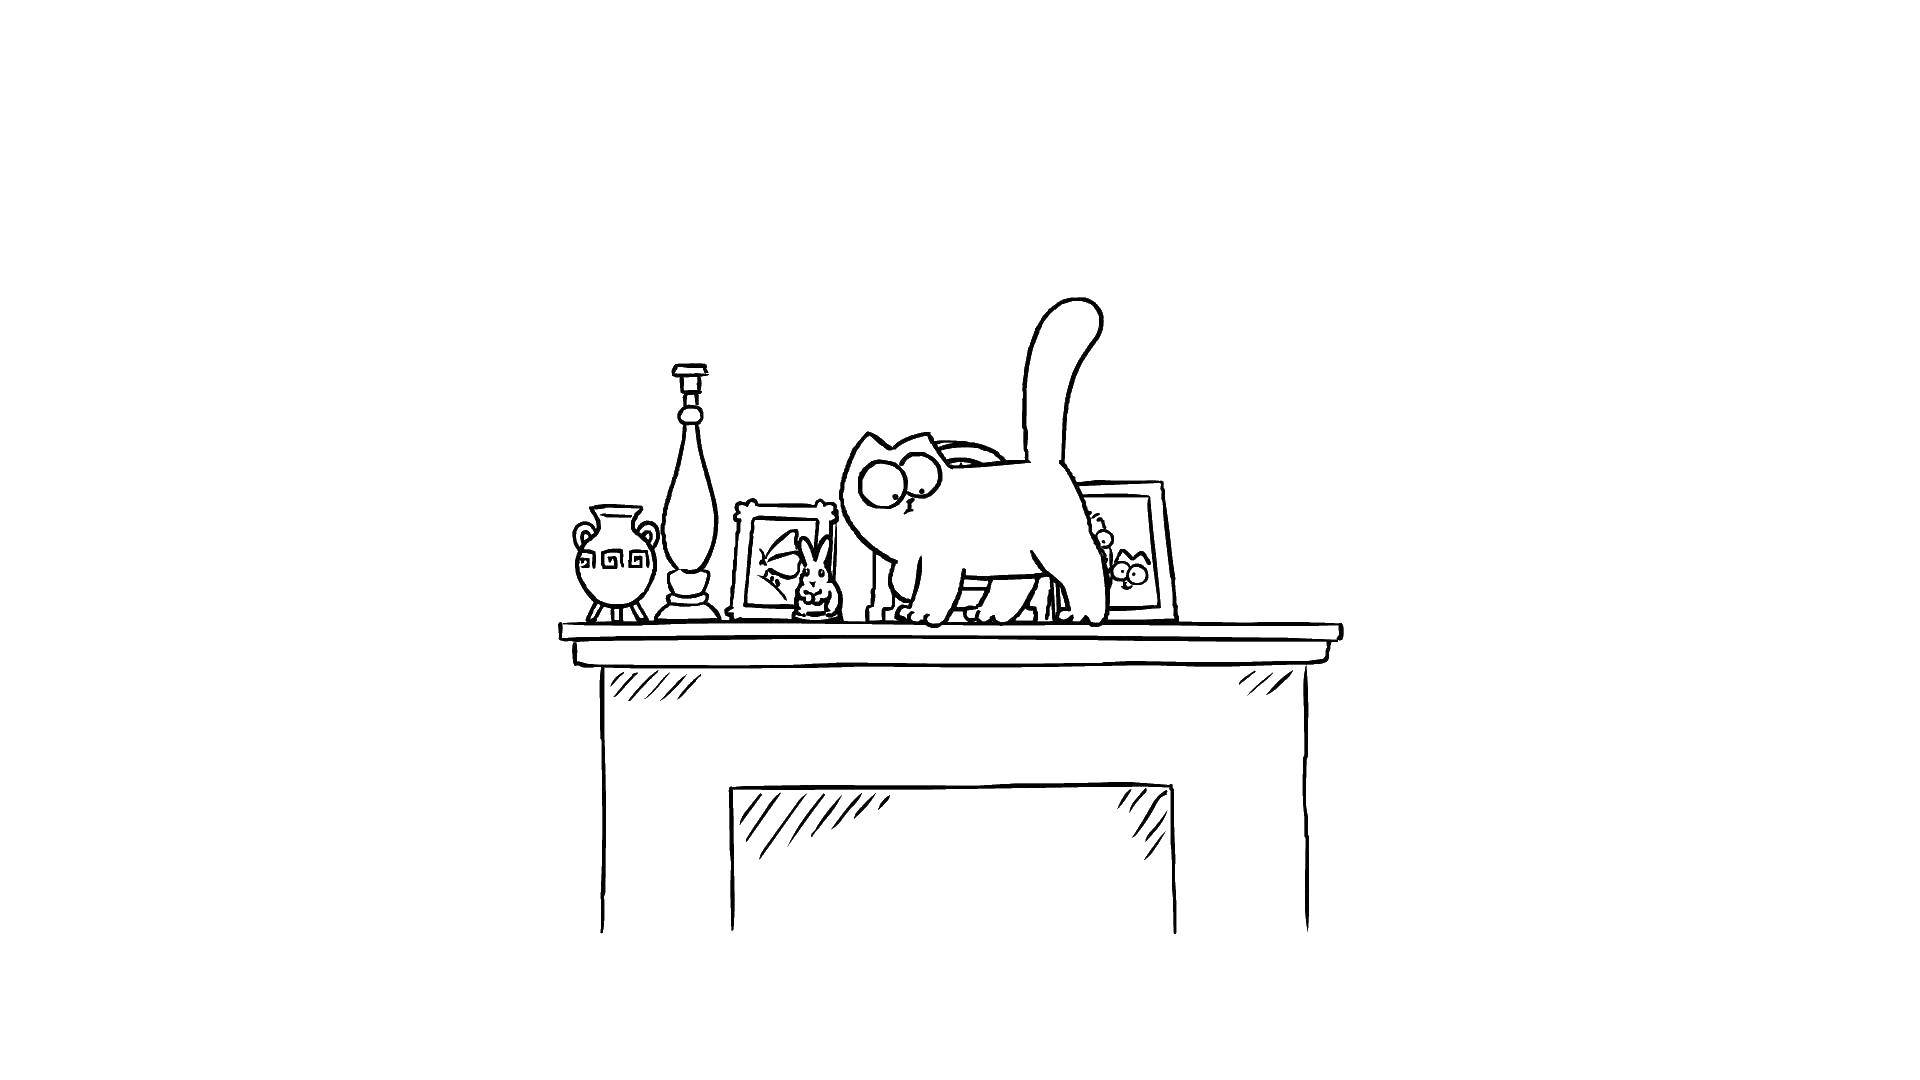 Coloring Мультфильм кот саймона. Category кот саймона. Tags:  мультфильмы, кот Саймона.